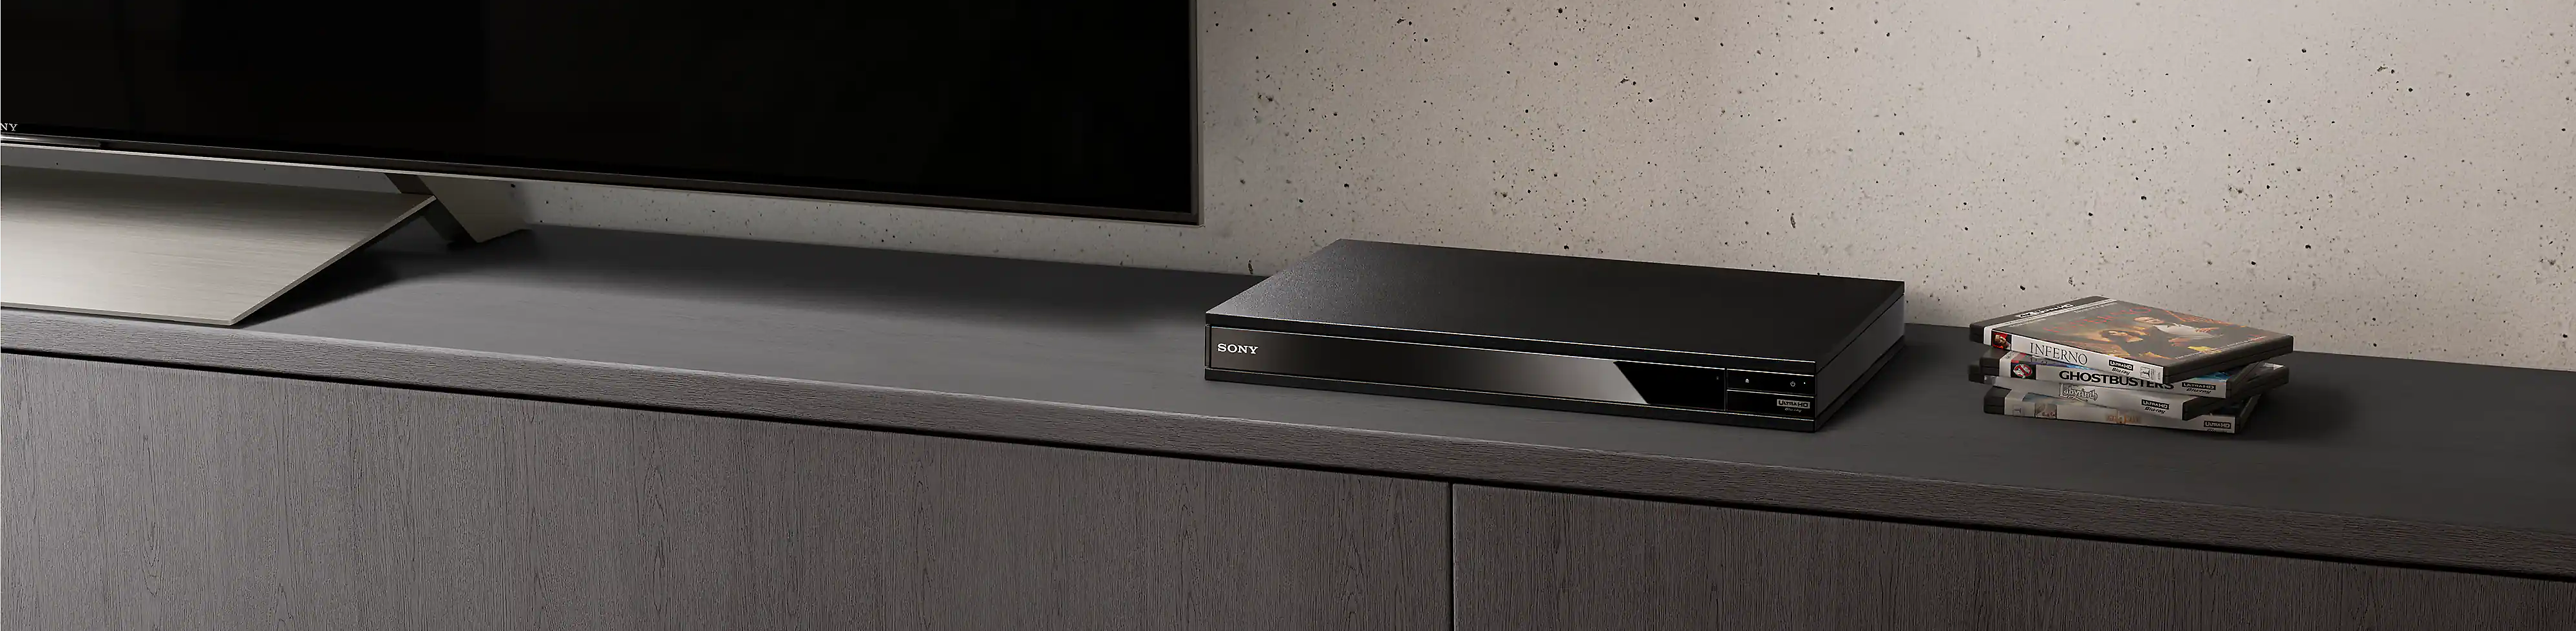 يظهر مشغل Blu-ray Disc™‎ باللون الأسود بين كومة من أقراص Blu-ray وجهاز تلفزيون باللون الأسود.